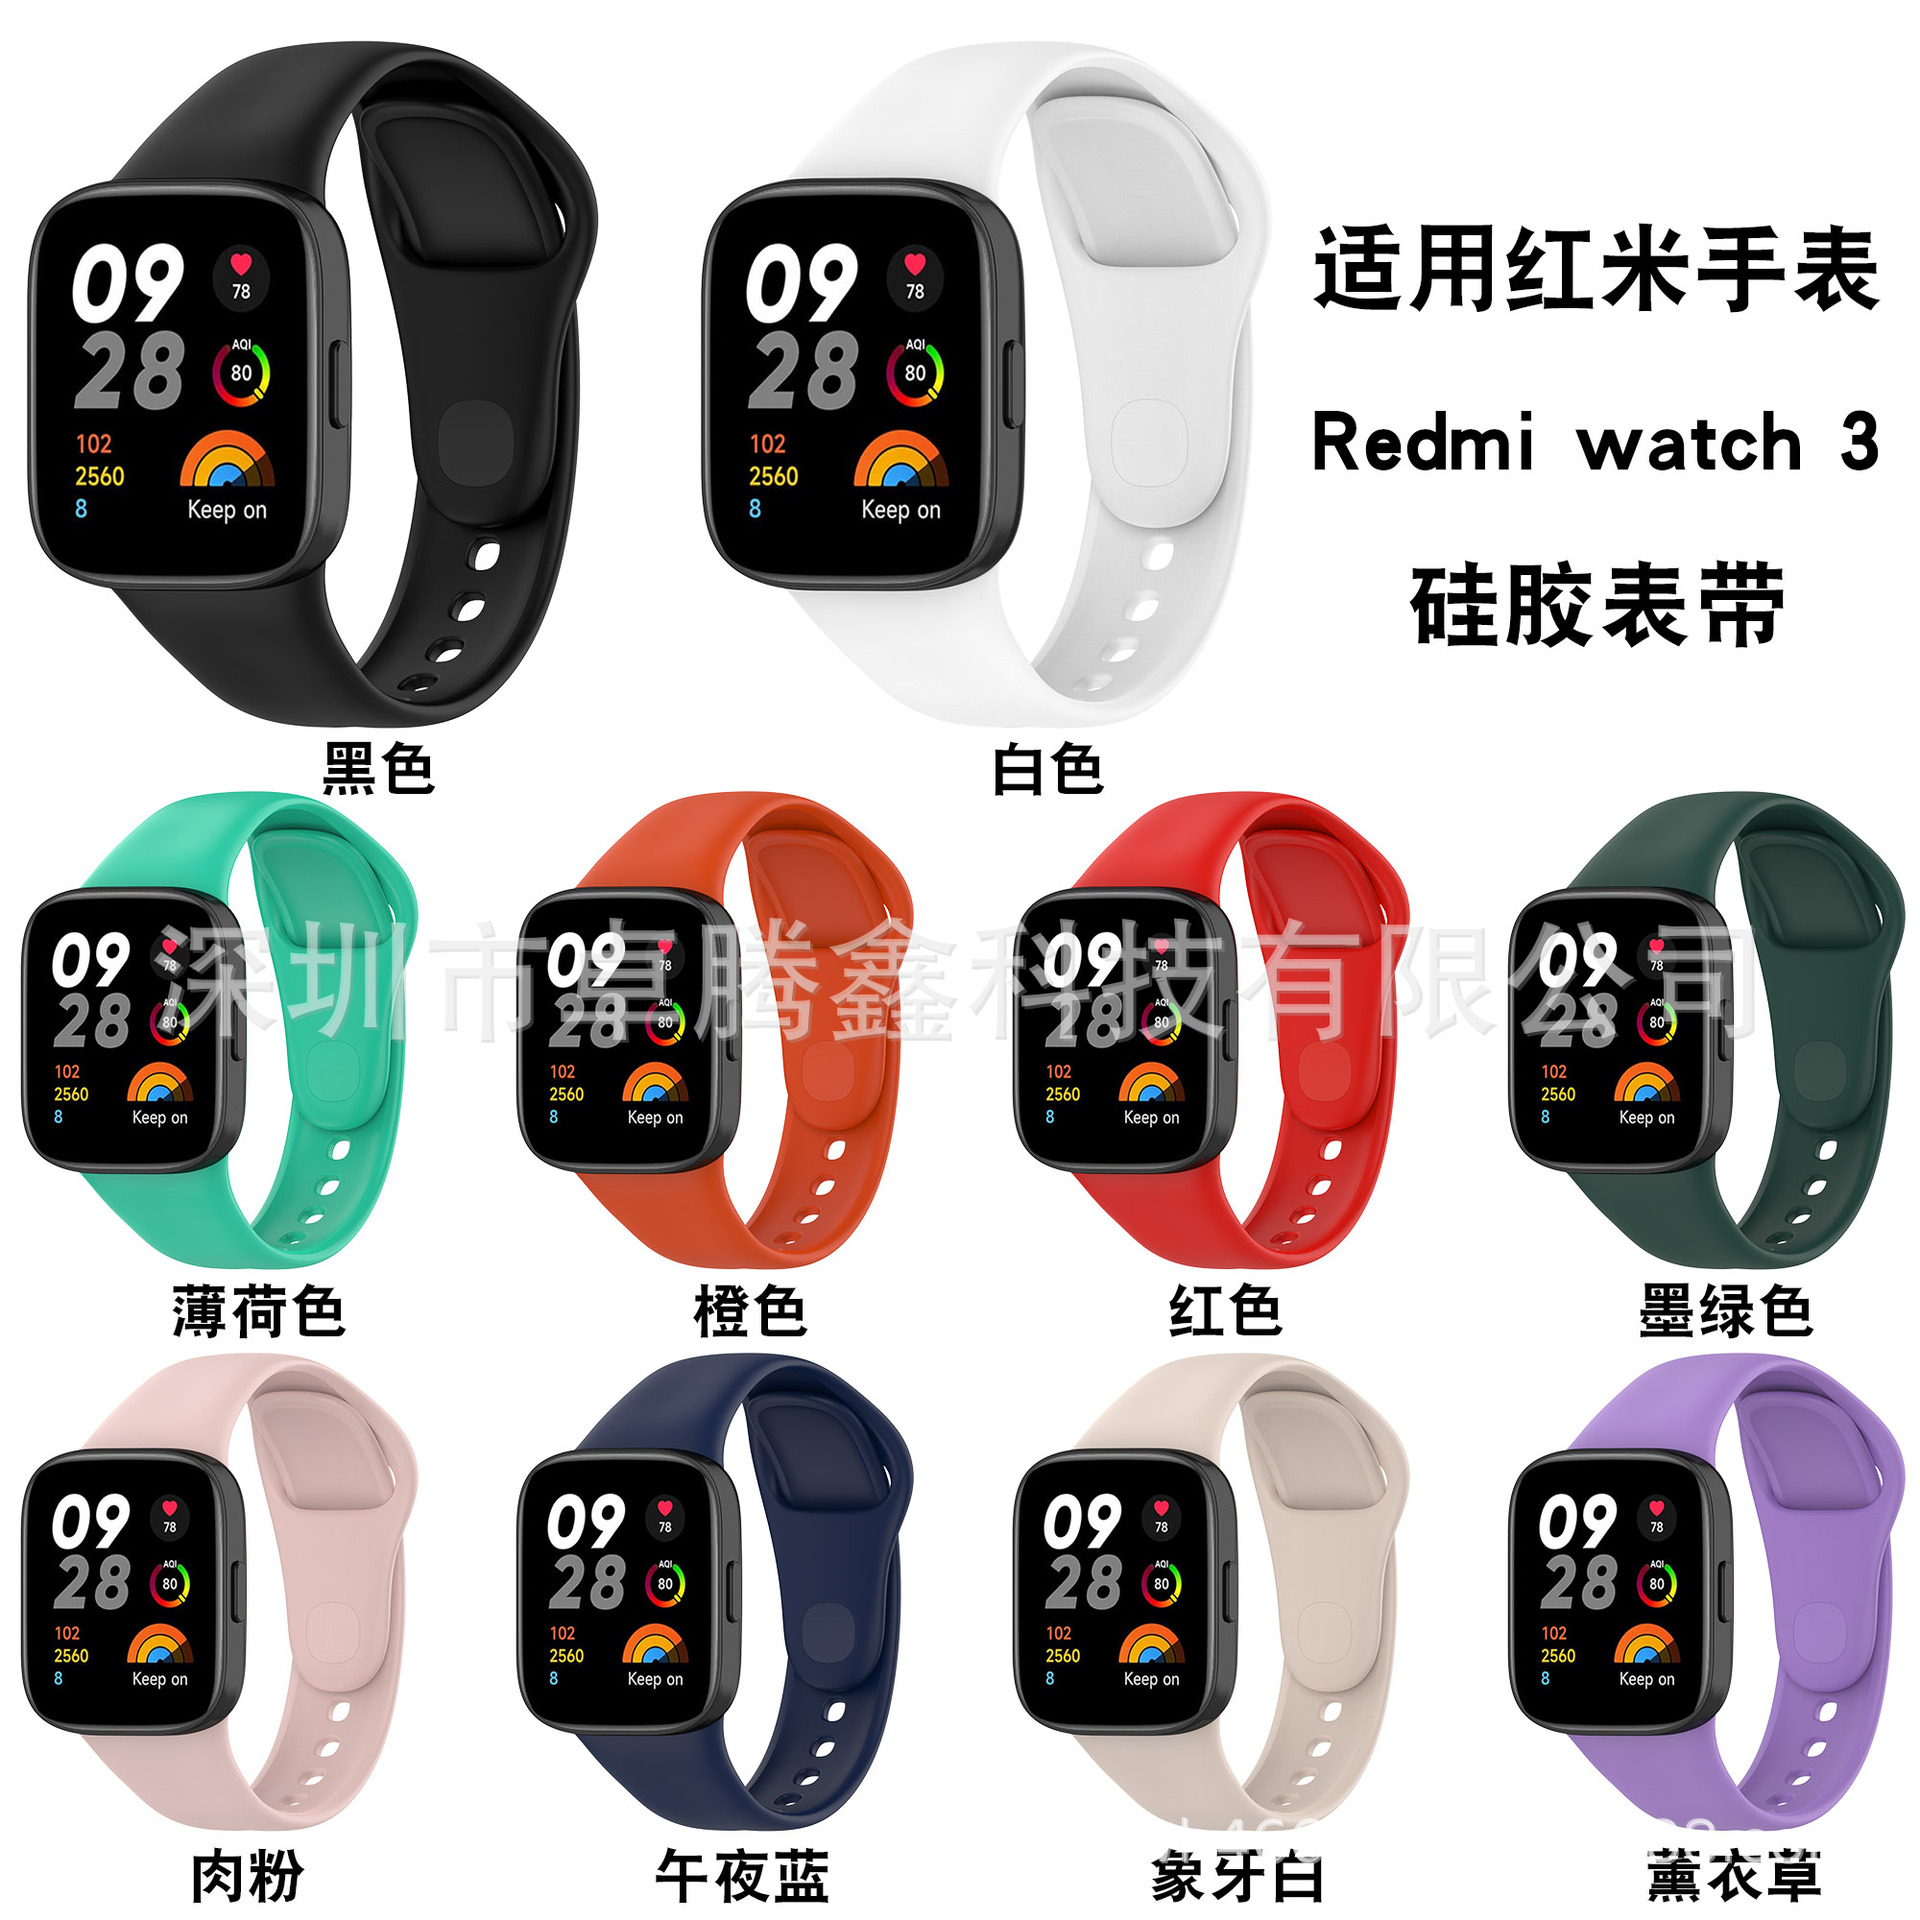 新款适用红米watch3手表带 智能运动手表红米Redmi watch 3手表带图